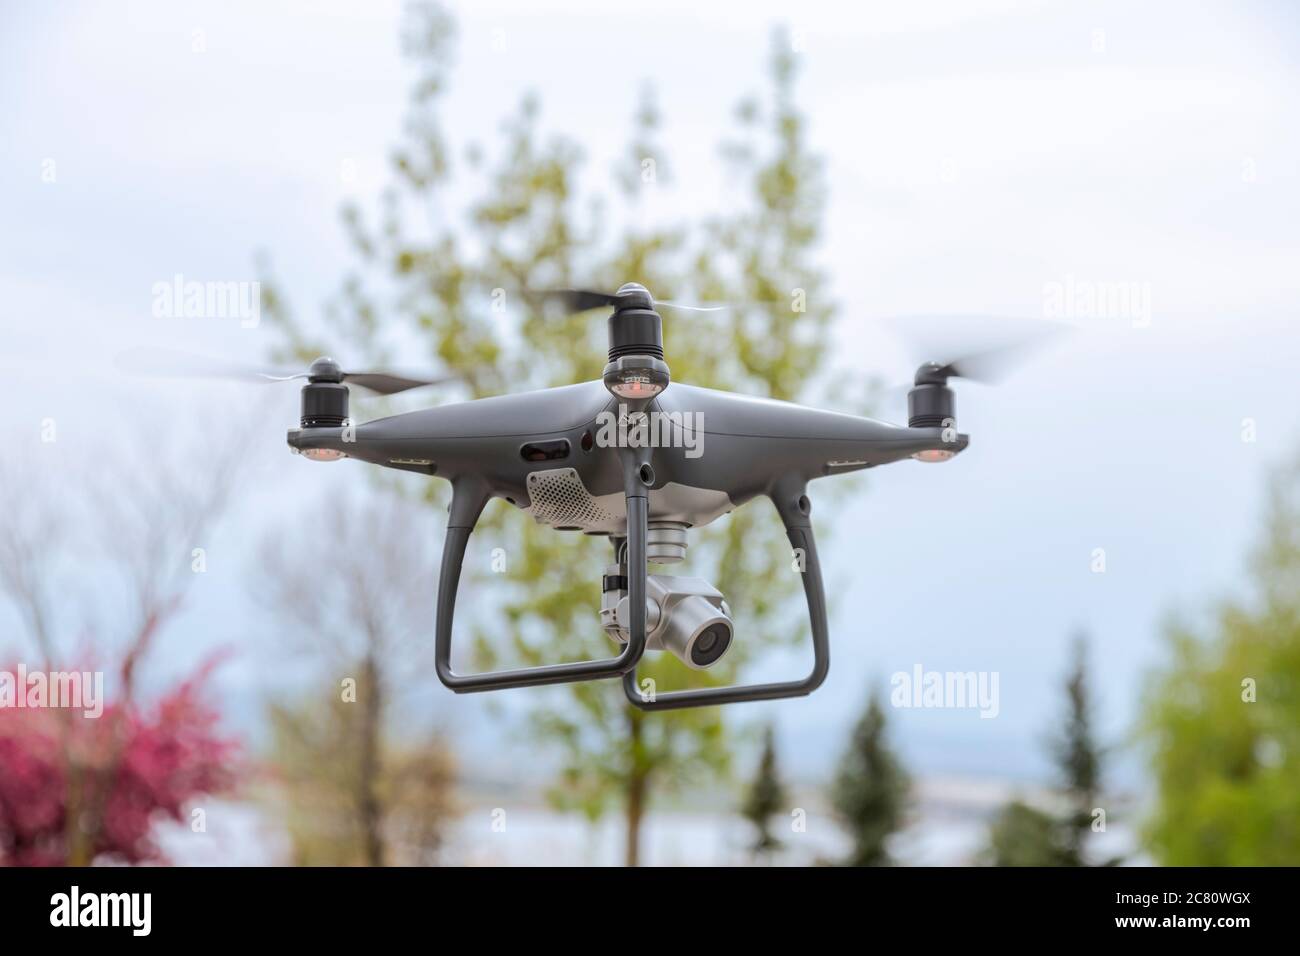 Fliegende Drohne mit Kamera am Himmel. Drohnen mit für die meisten  Reichweite Zweck. Einer von ihnen macht Foto oder Video am Himmel  Stockfotografie - Alamy